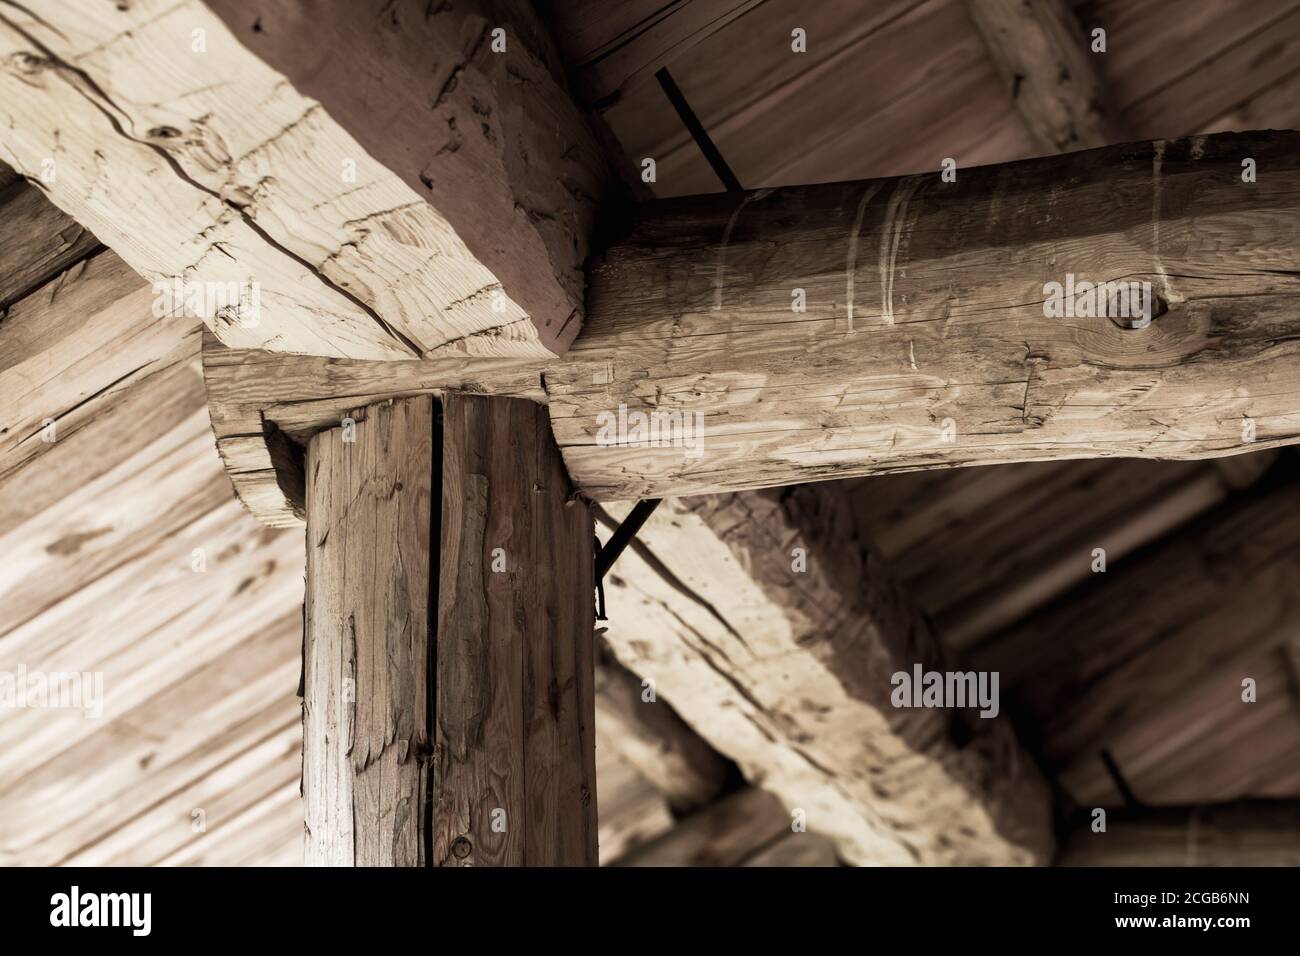 Ancien toit en bois Construction interne. Grumes et planches rugueuses Banque D'Images